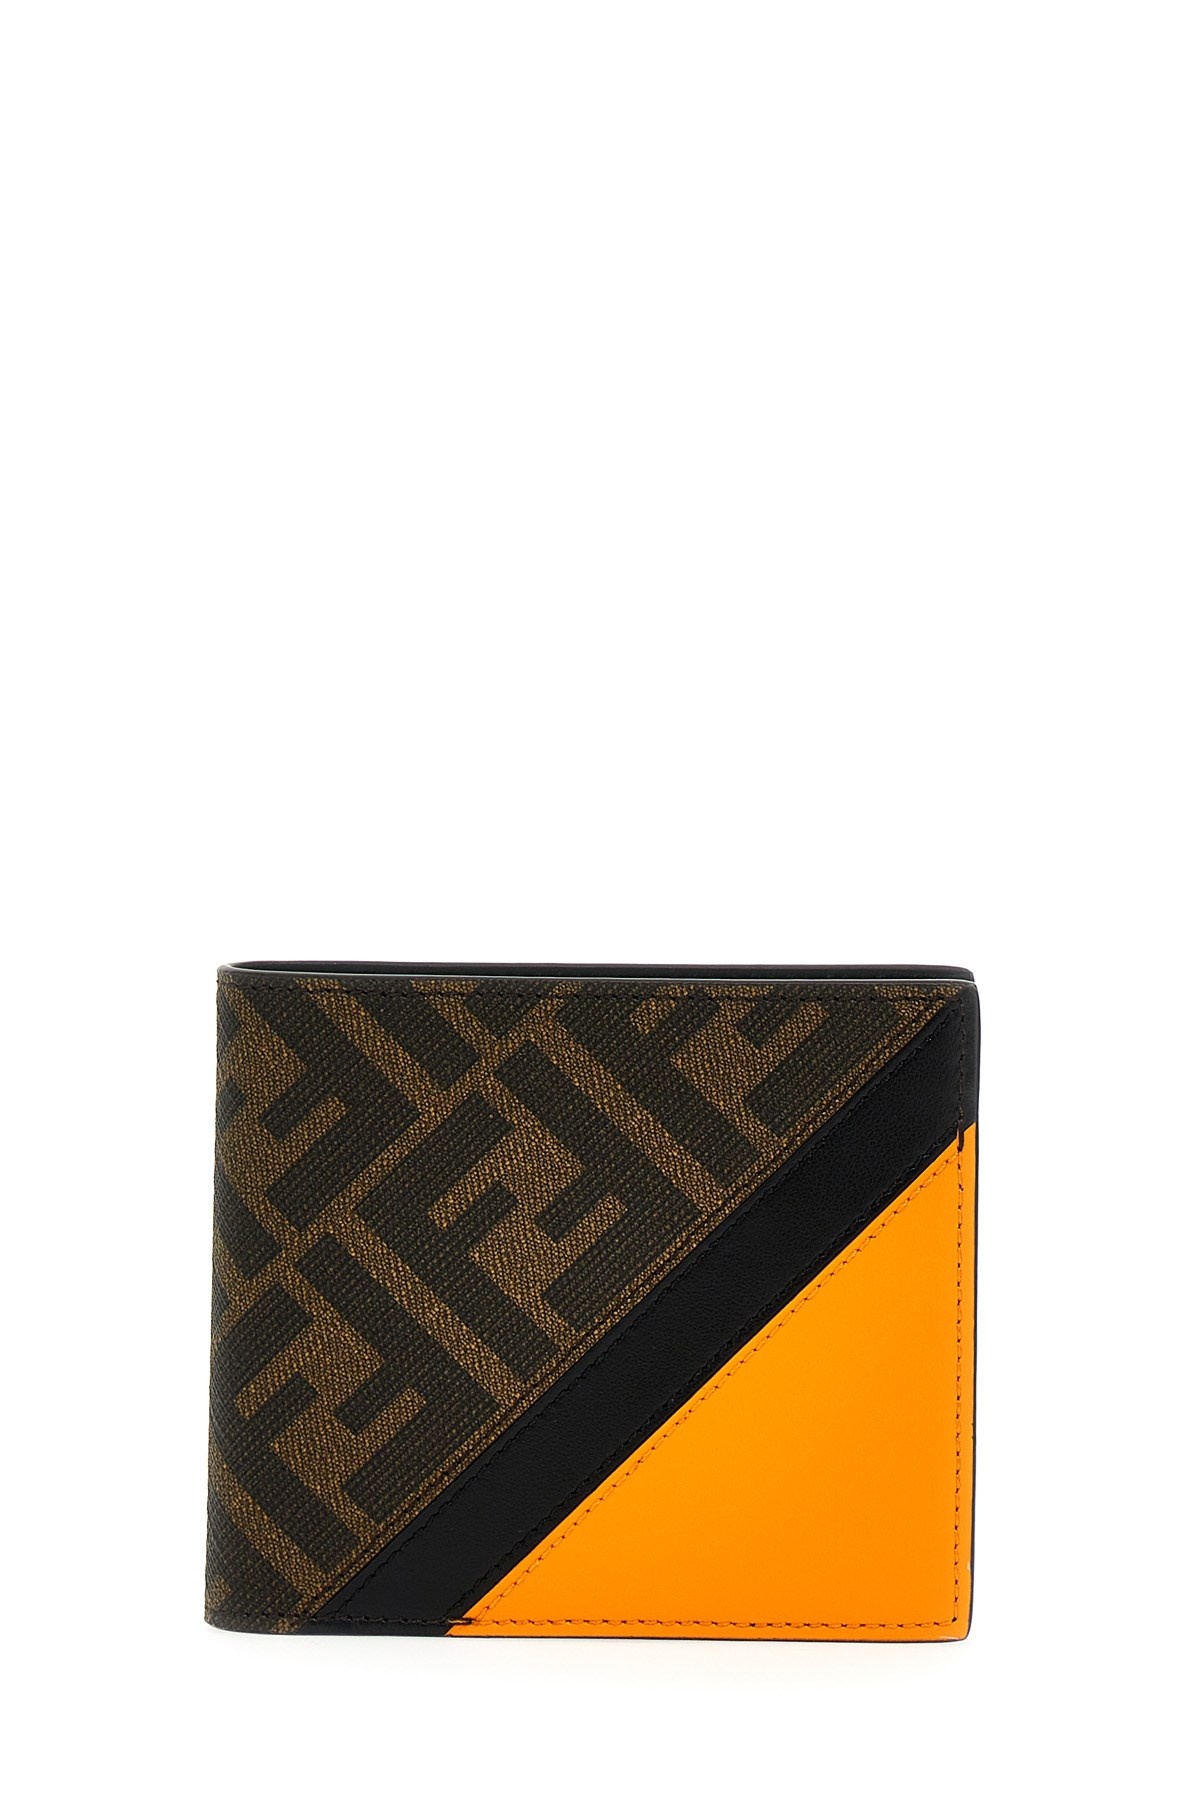 Fendi Diagonal Wallet